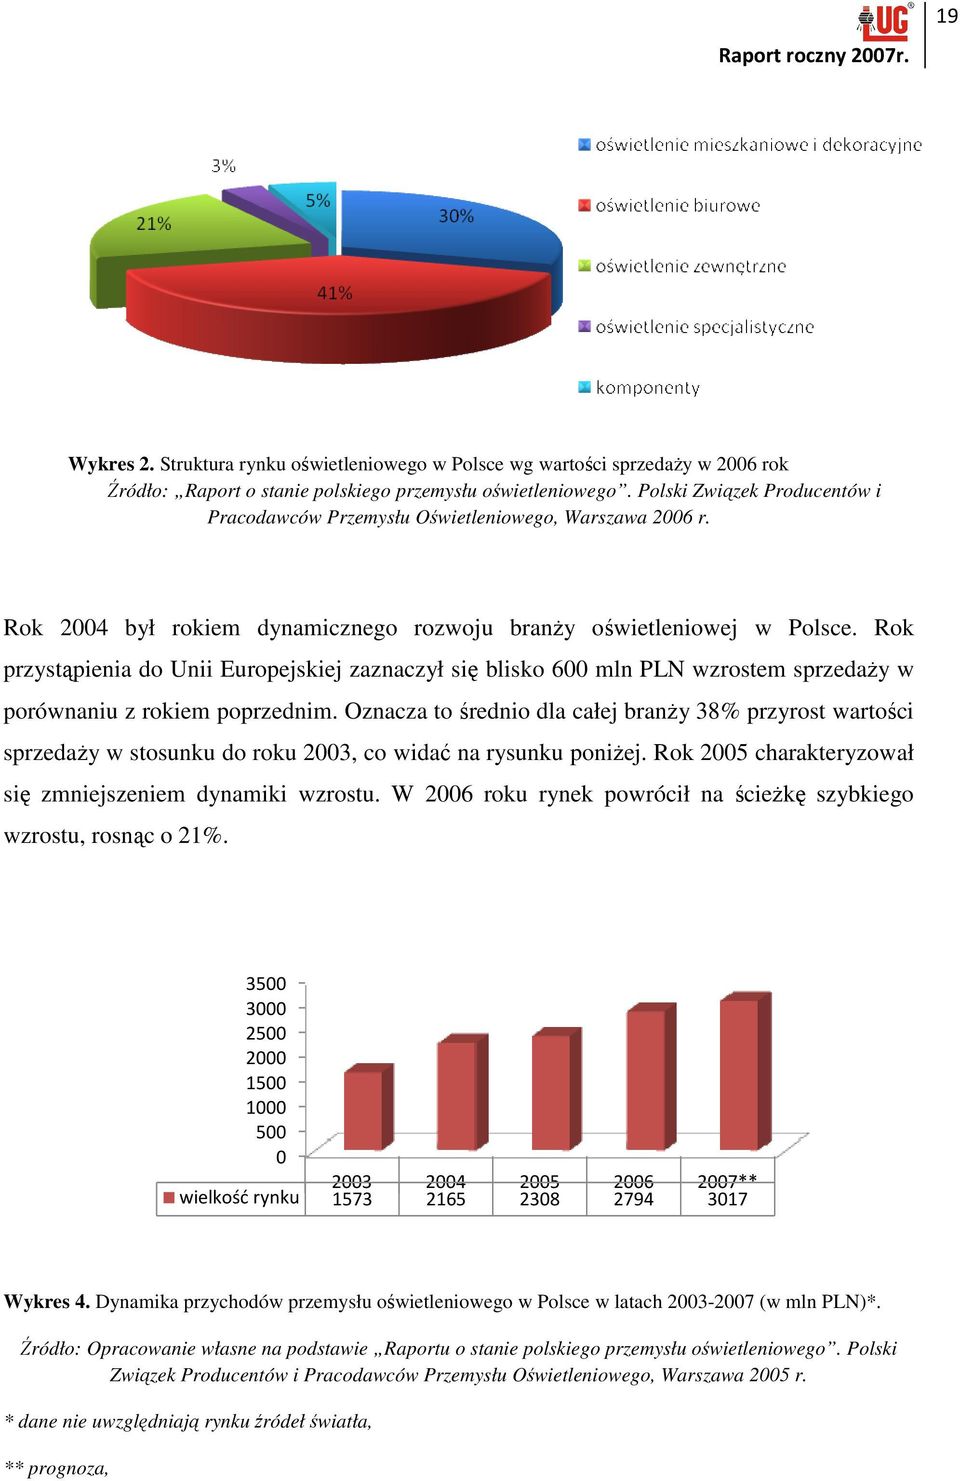 Rok przystąpienia do Unii Europejskiej zaznaczył się blisko 600 mln PLN wzrostem sprzedaŝy w porównaniu z rokiem poprzednim.